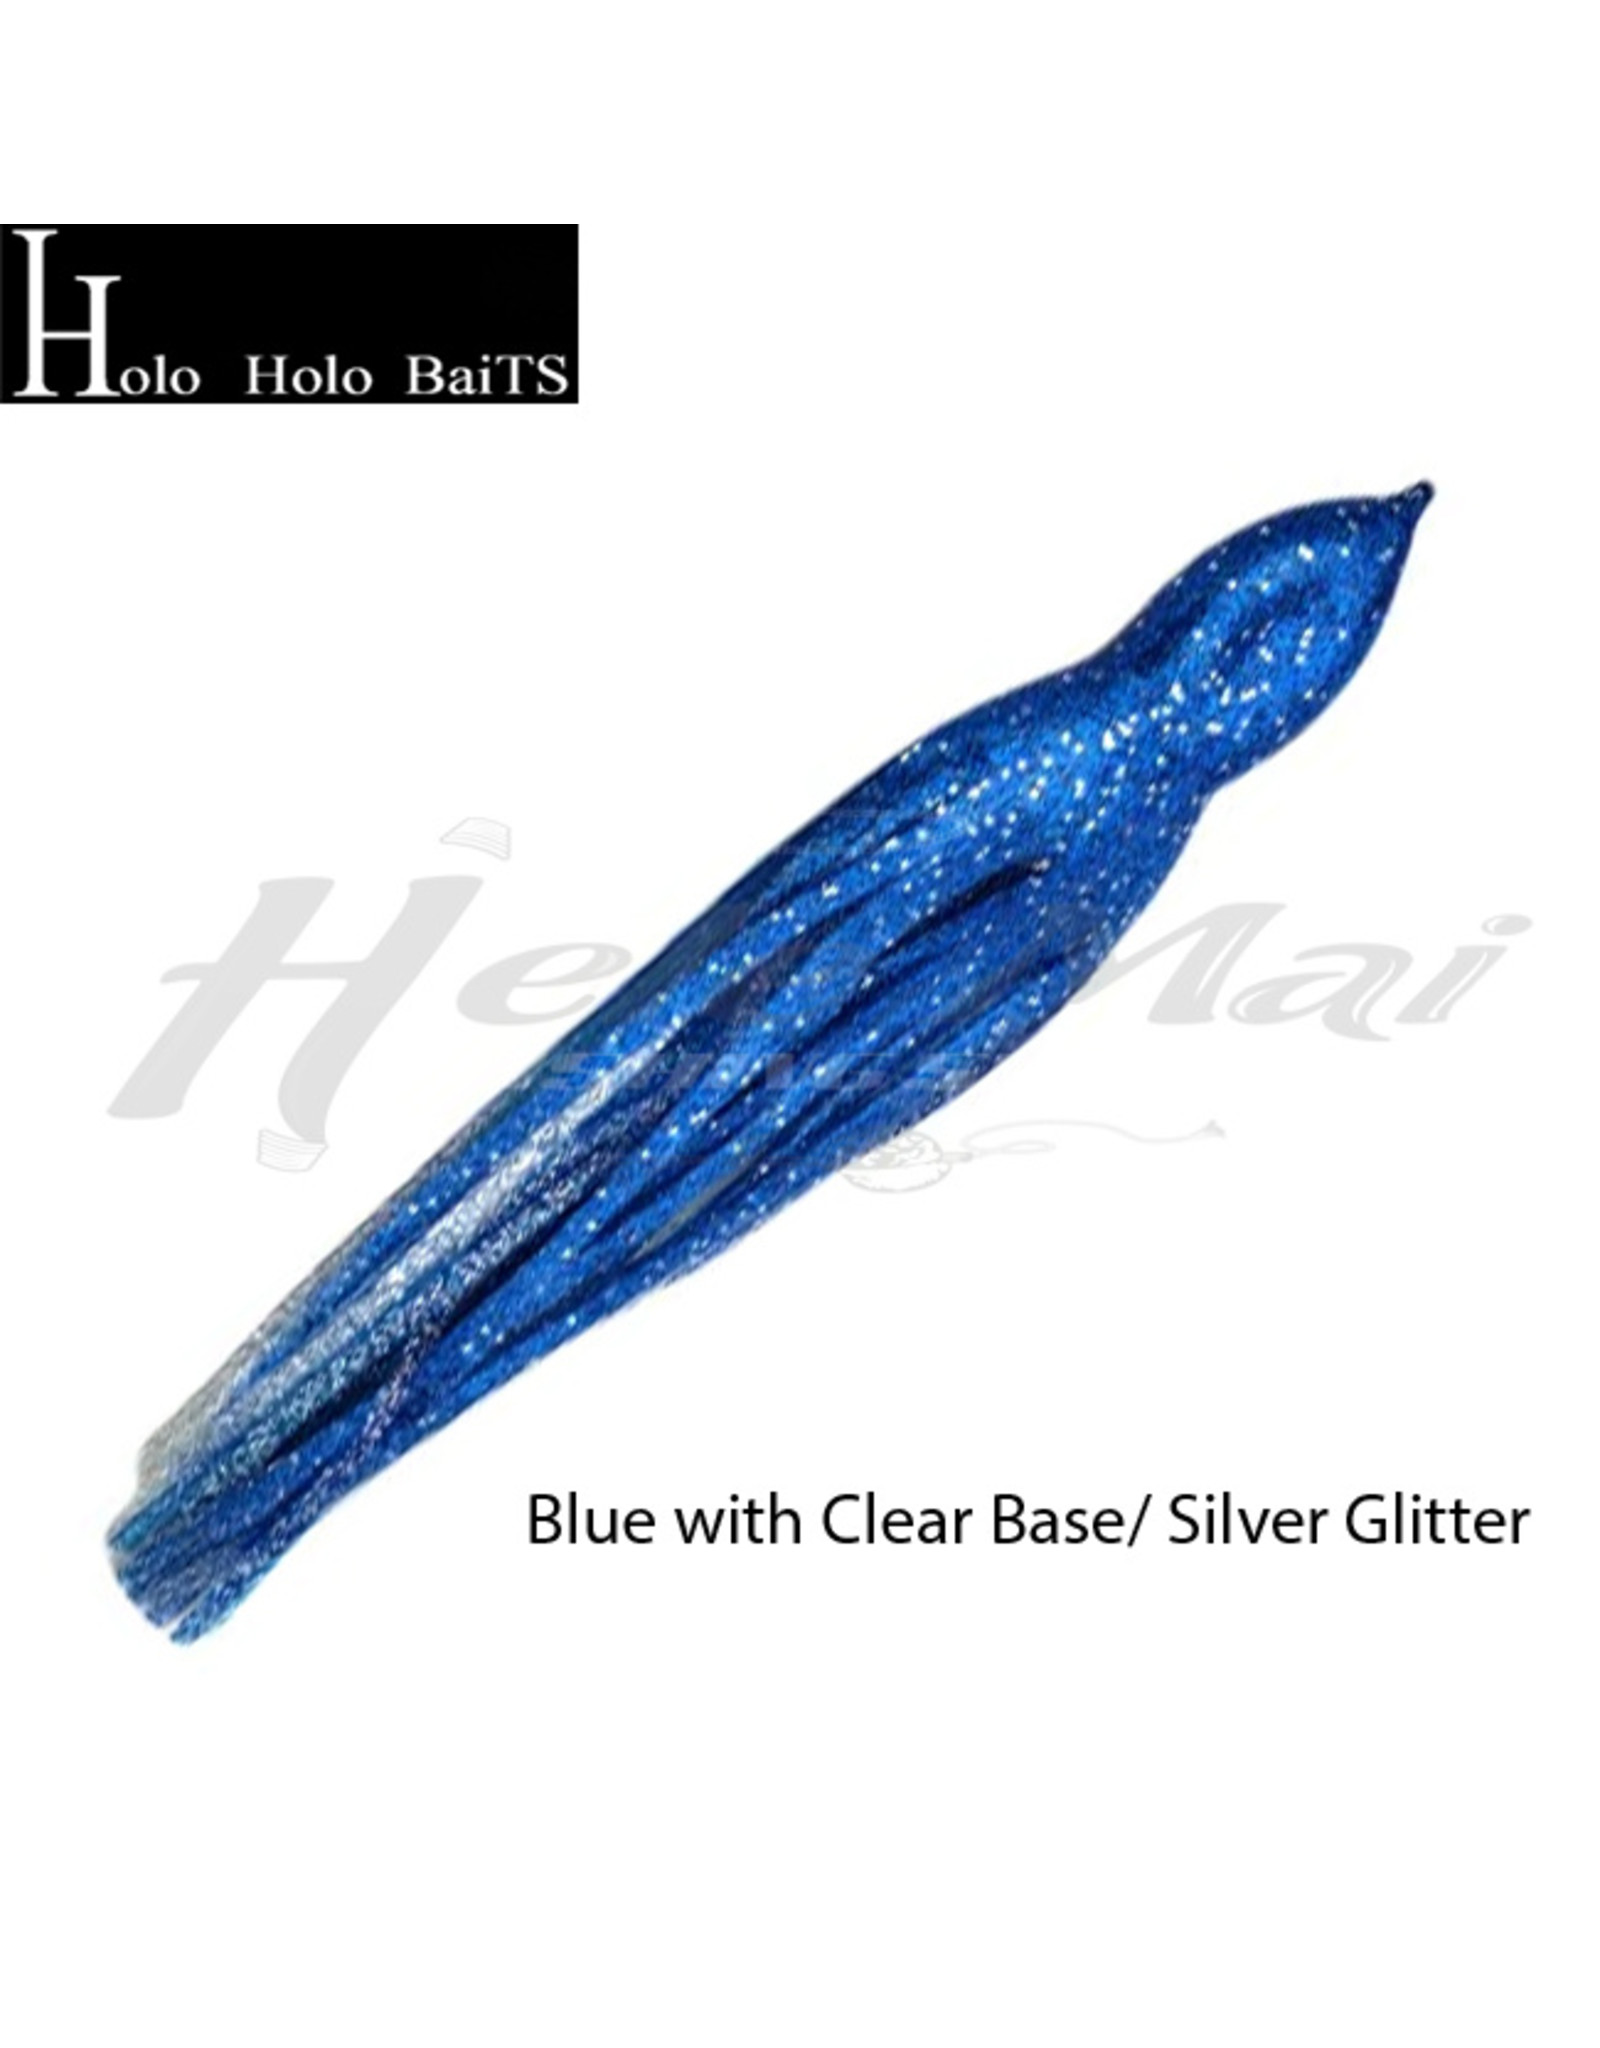 HOLO HOLO HAWAII (HHH) HH, 9" SQUID SKIRT BLUE GLITTER B10/G19*G12